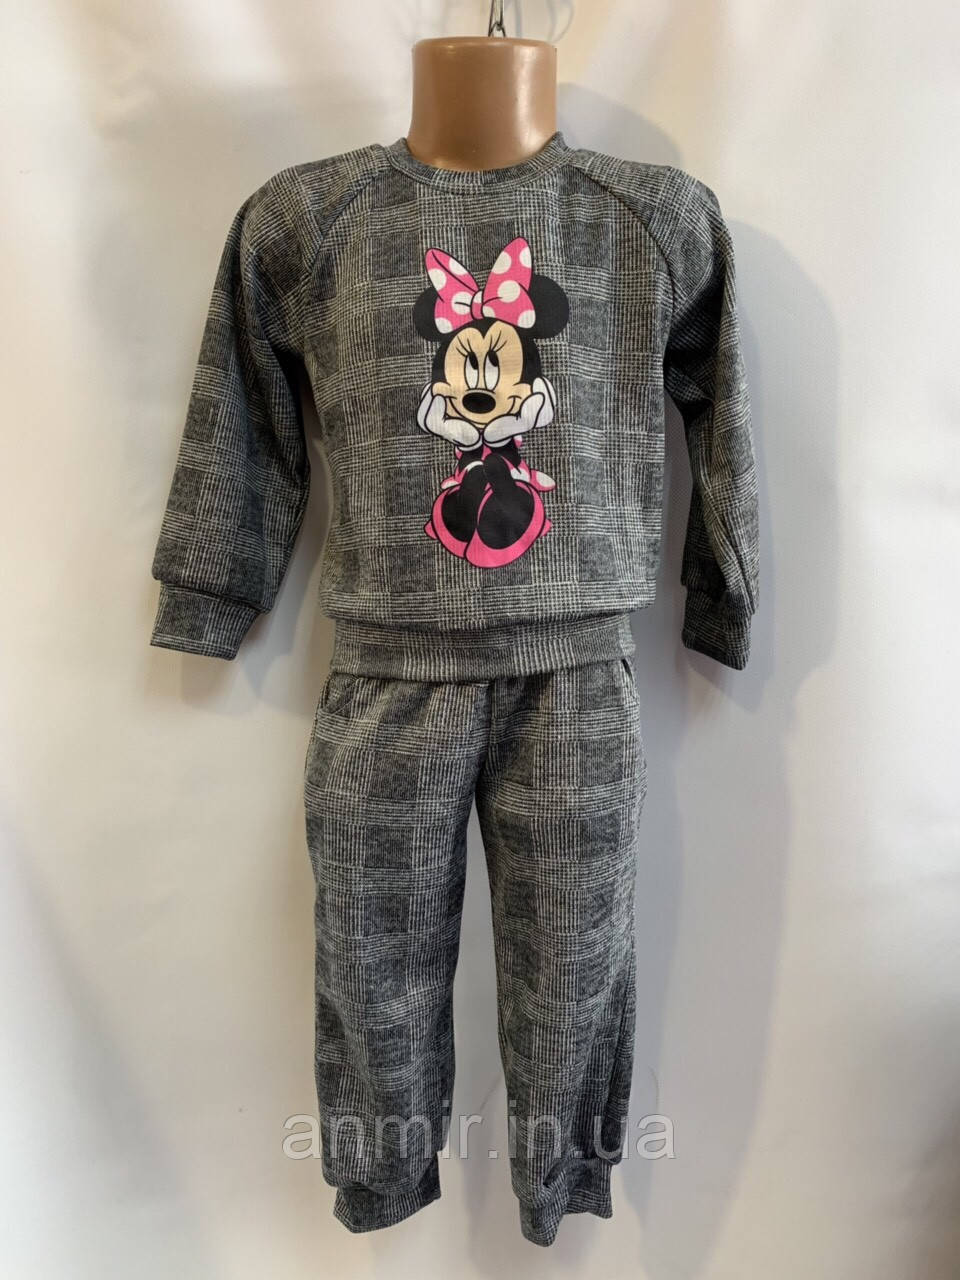 Дитячий костюм в клічку для дівчат з куклою “Міккі..." 2-6 років, сірого кольору